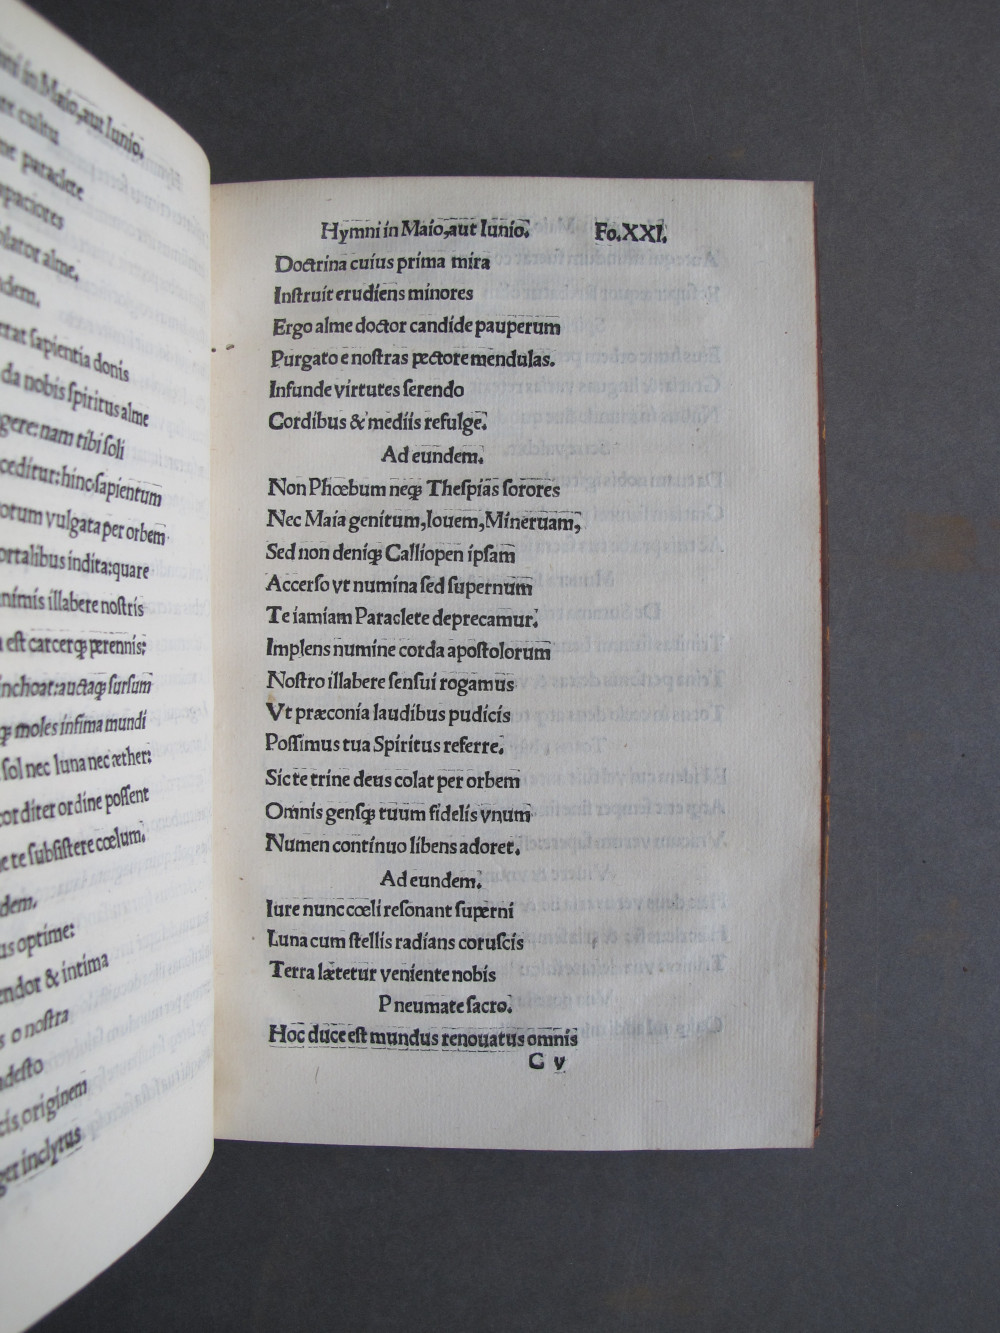 Folio 21 recto